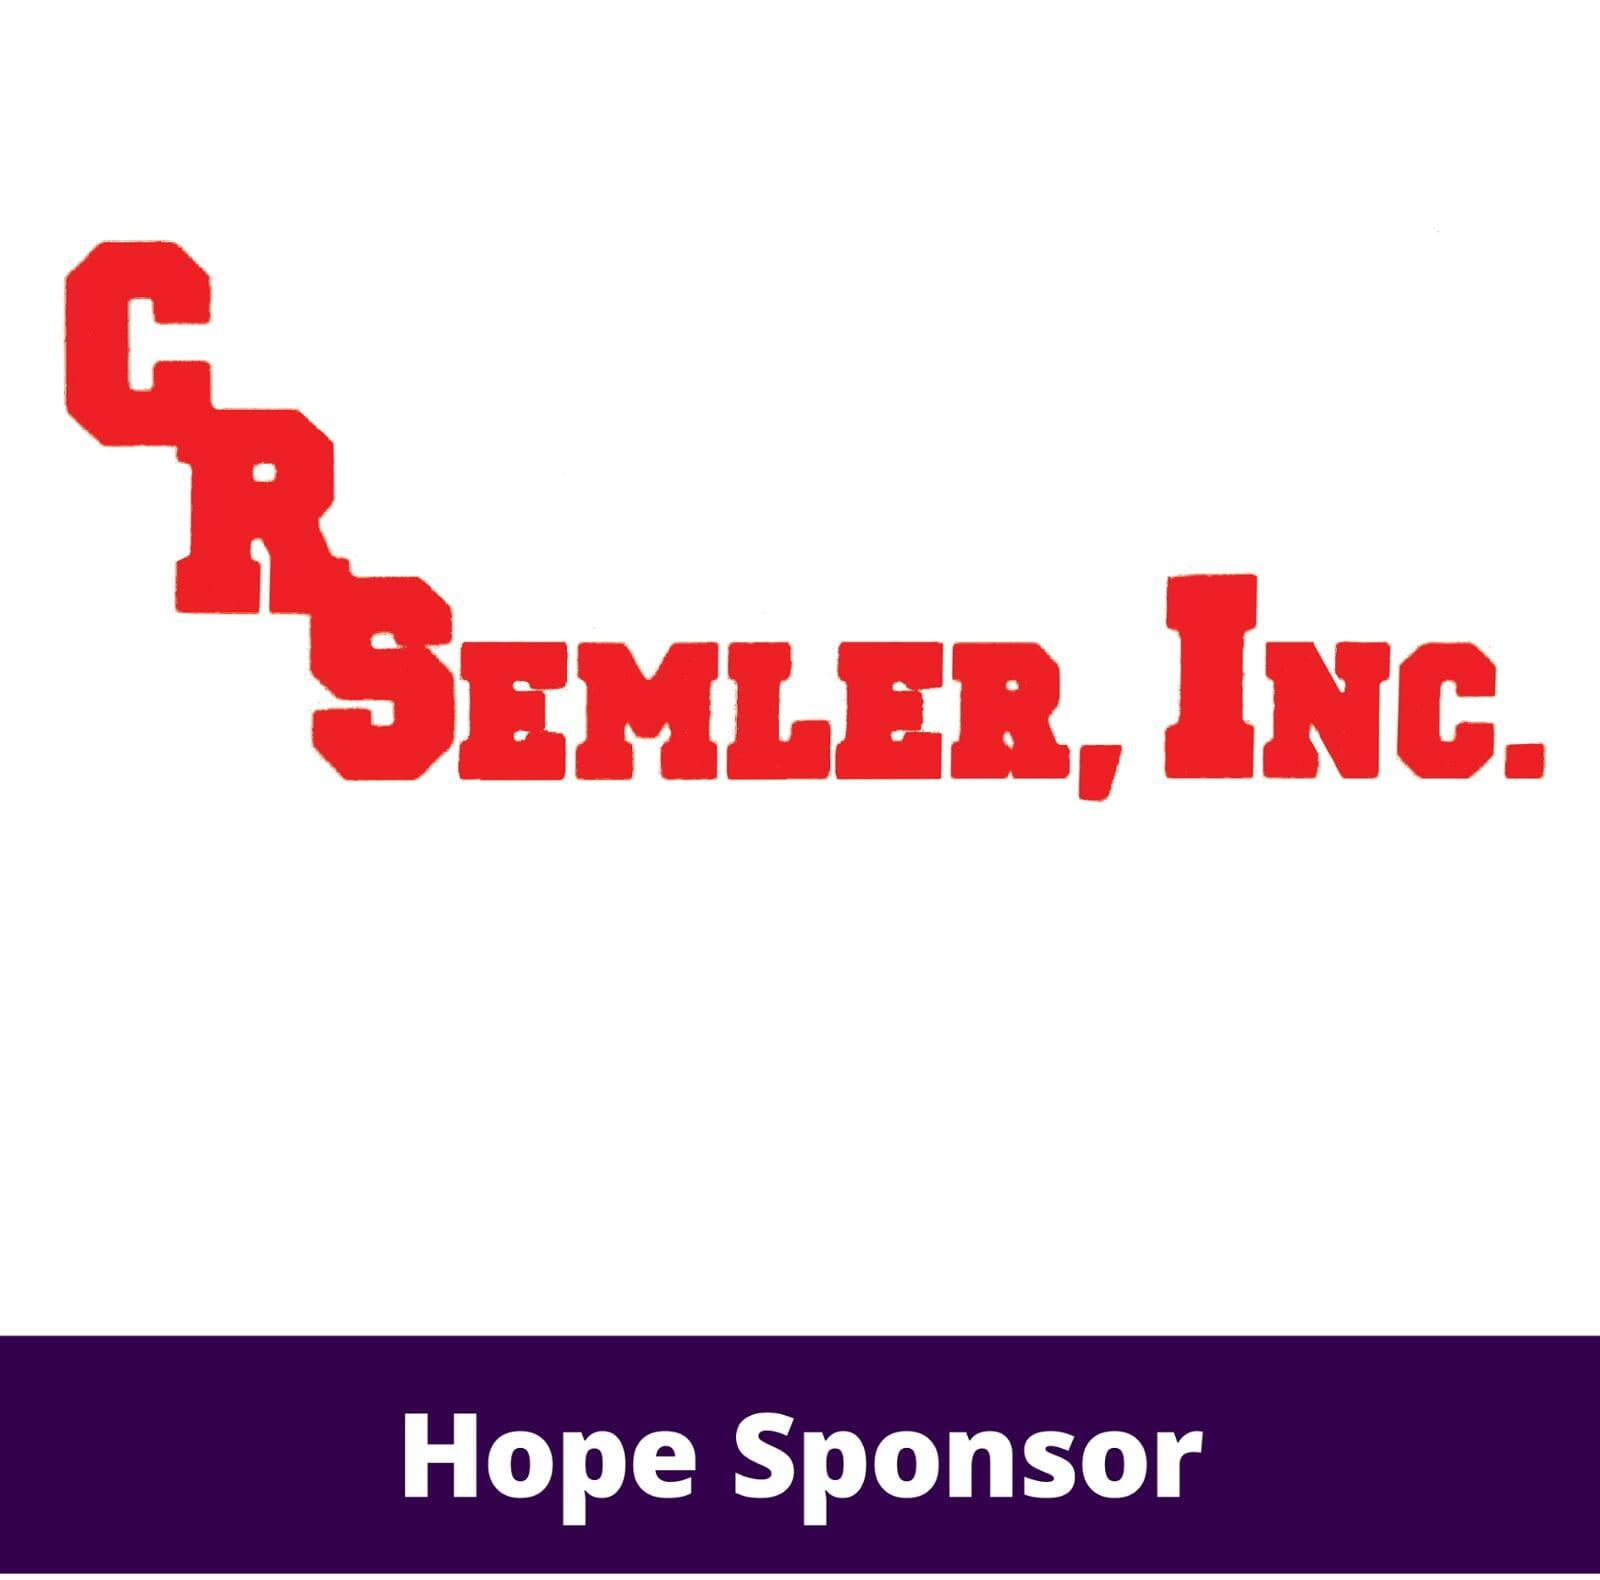 C.R. Semler, Inc. logo